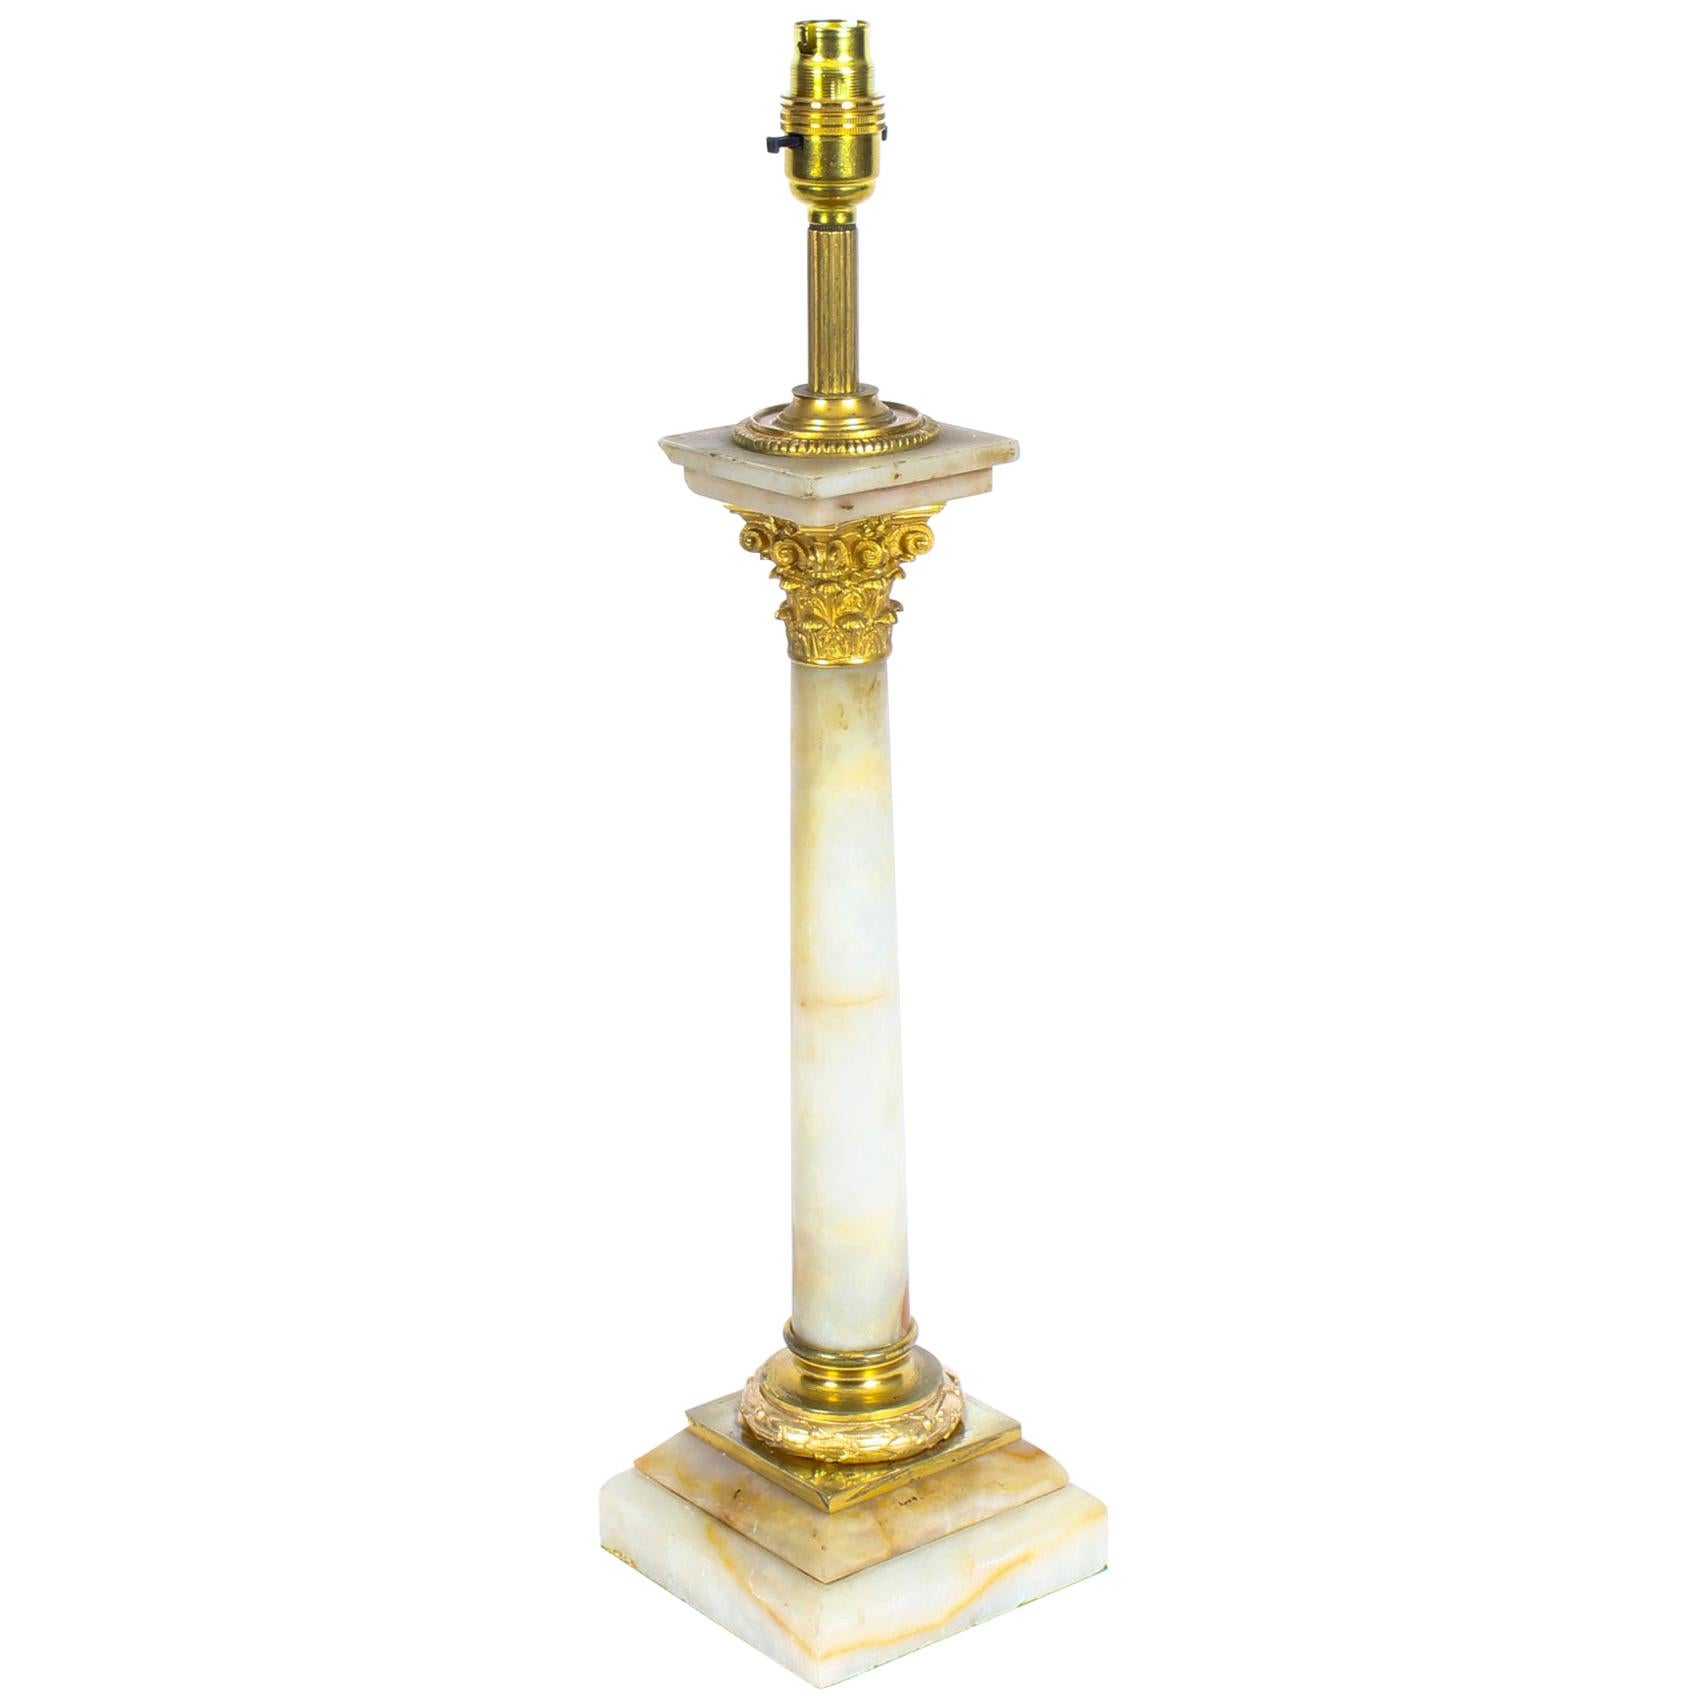 Ancienne lampe de bureau victorienne à colonne corinthienne en onyx montée sur bronze doré, XIXe siècle